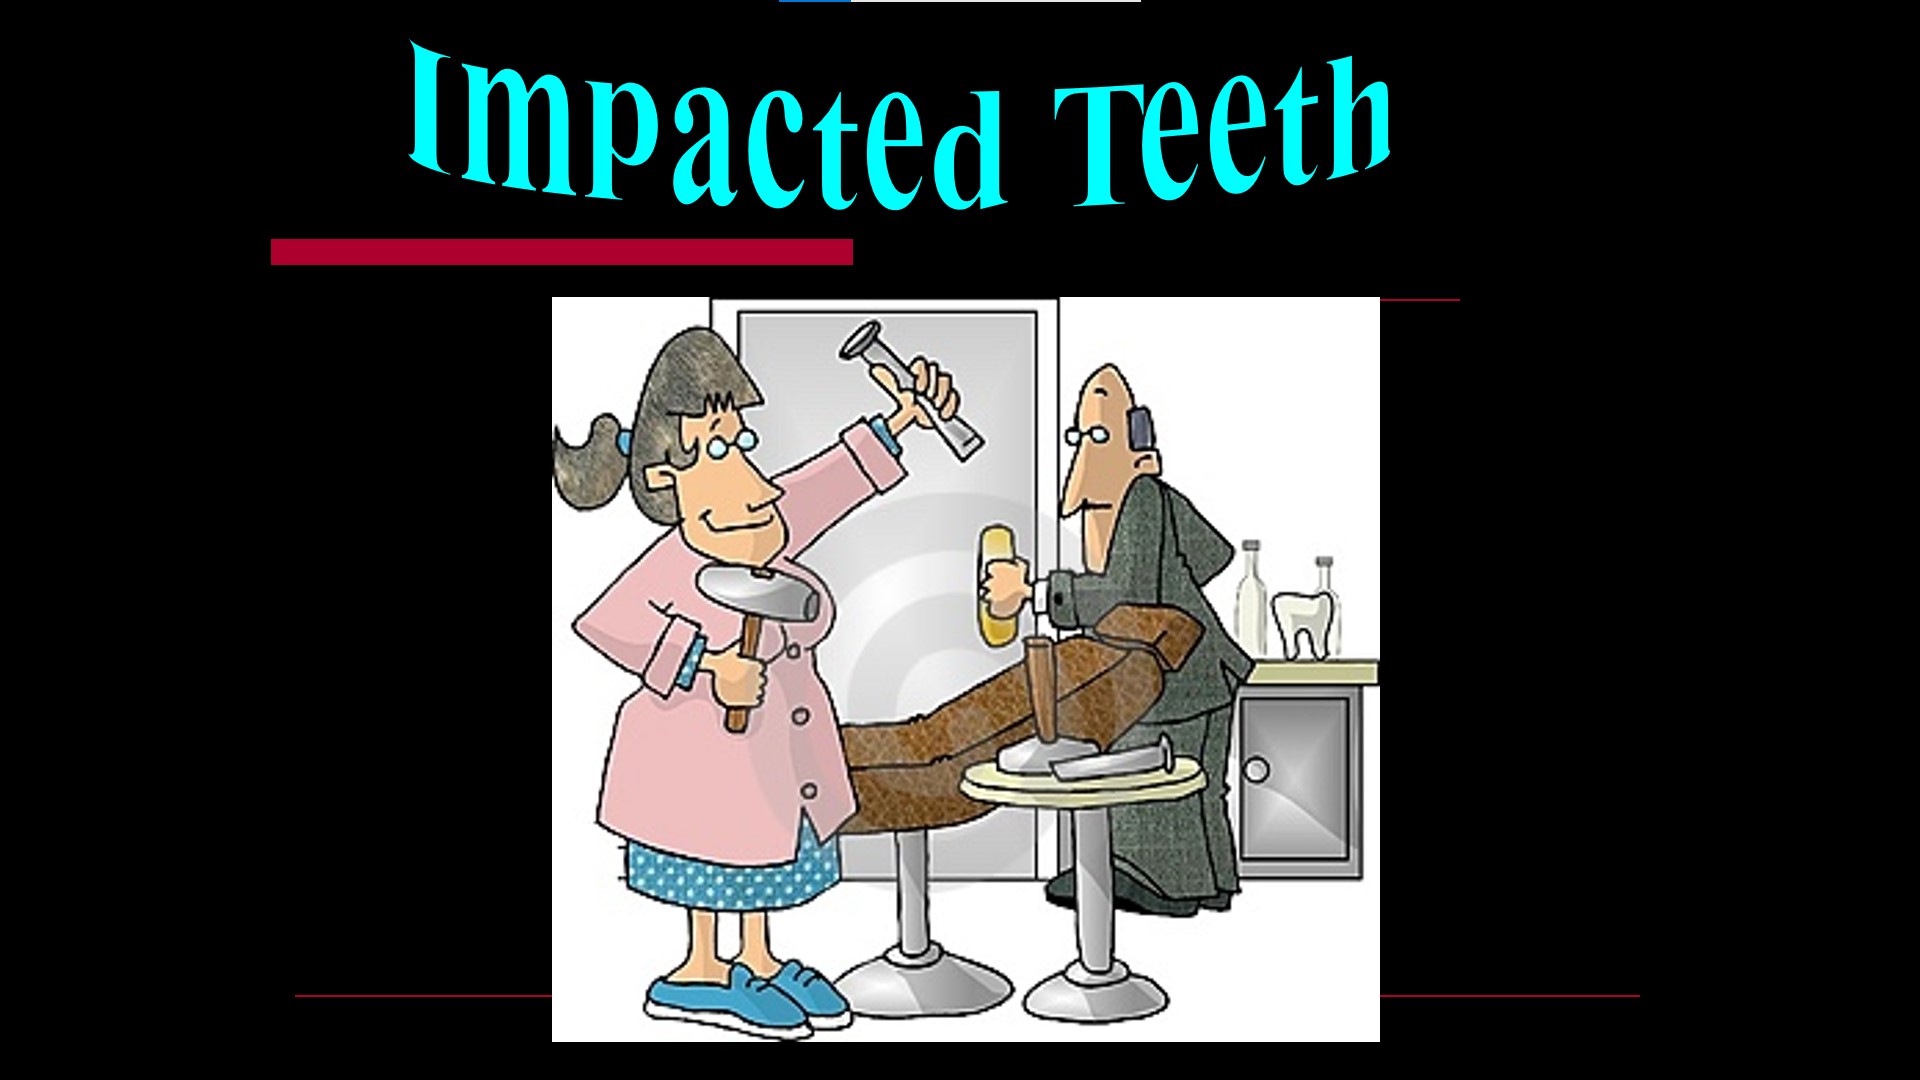 Impacted teeth1